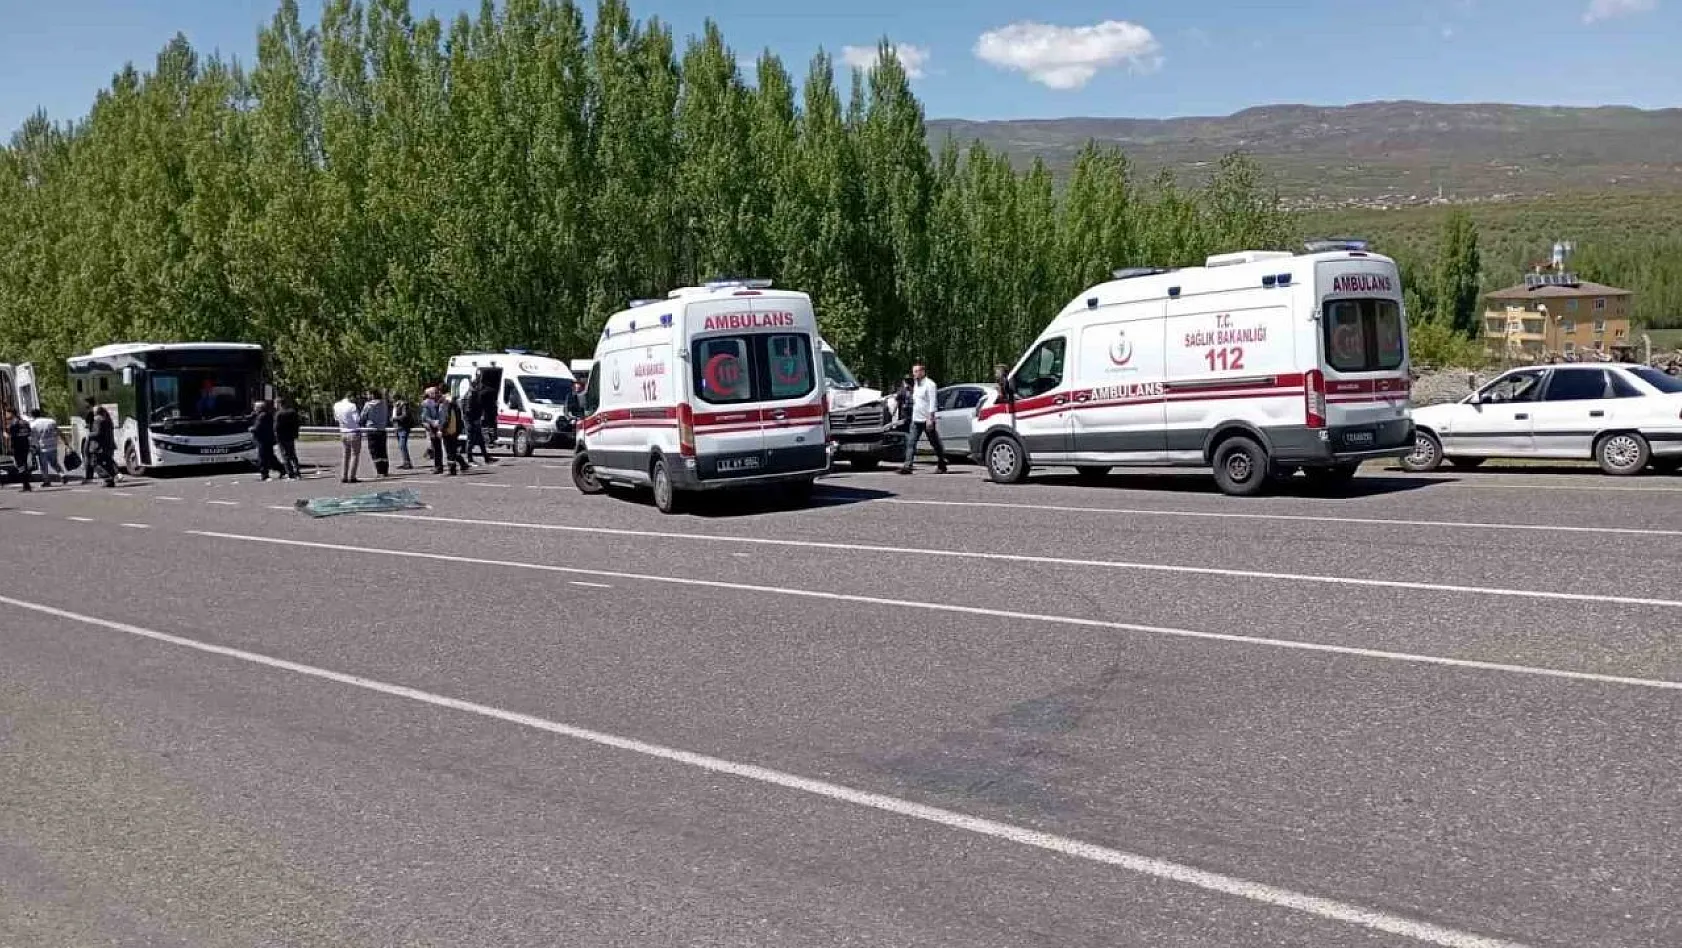 Bingöl'de halk otobüsü ile minibüs çarpıştı: 14 yaralı